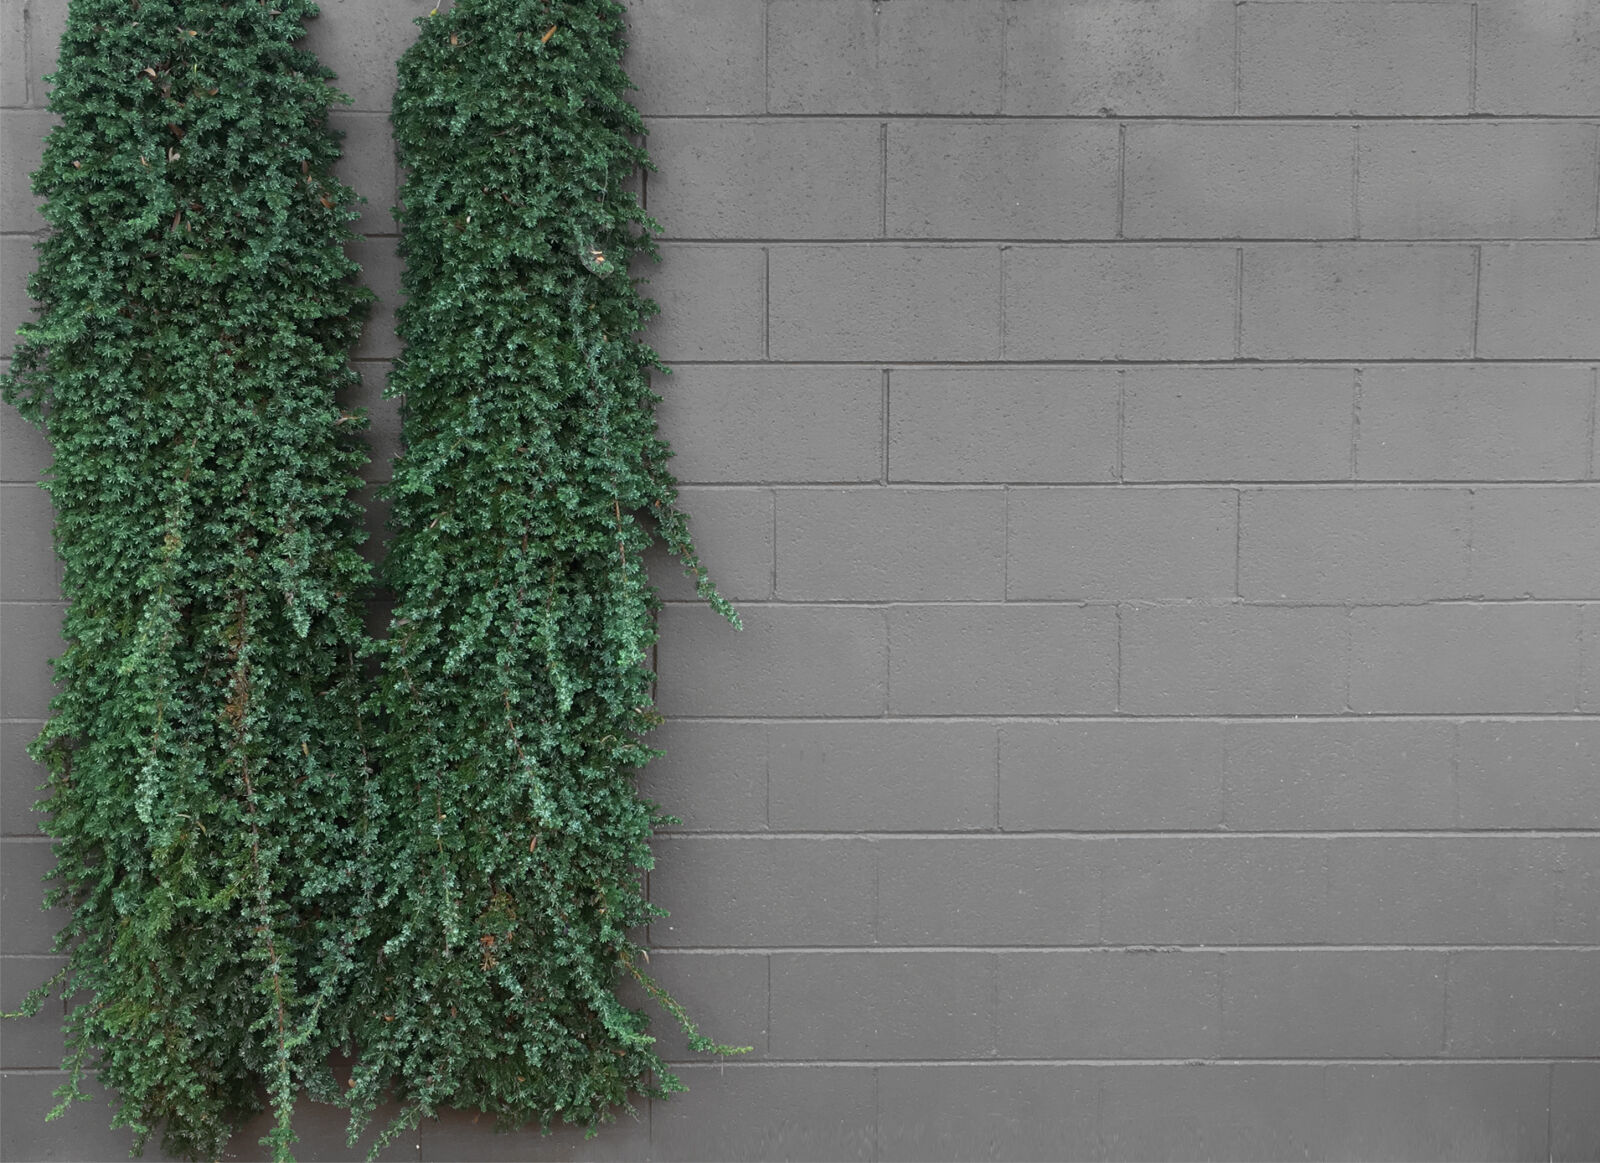 Apple iPhone SE sample photo. Brick, garden, gardenwall, verticalgarden photography